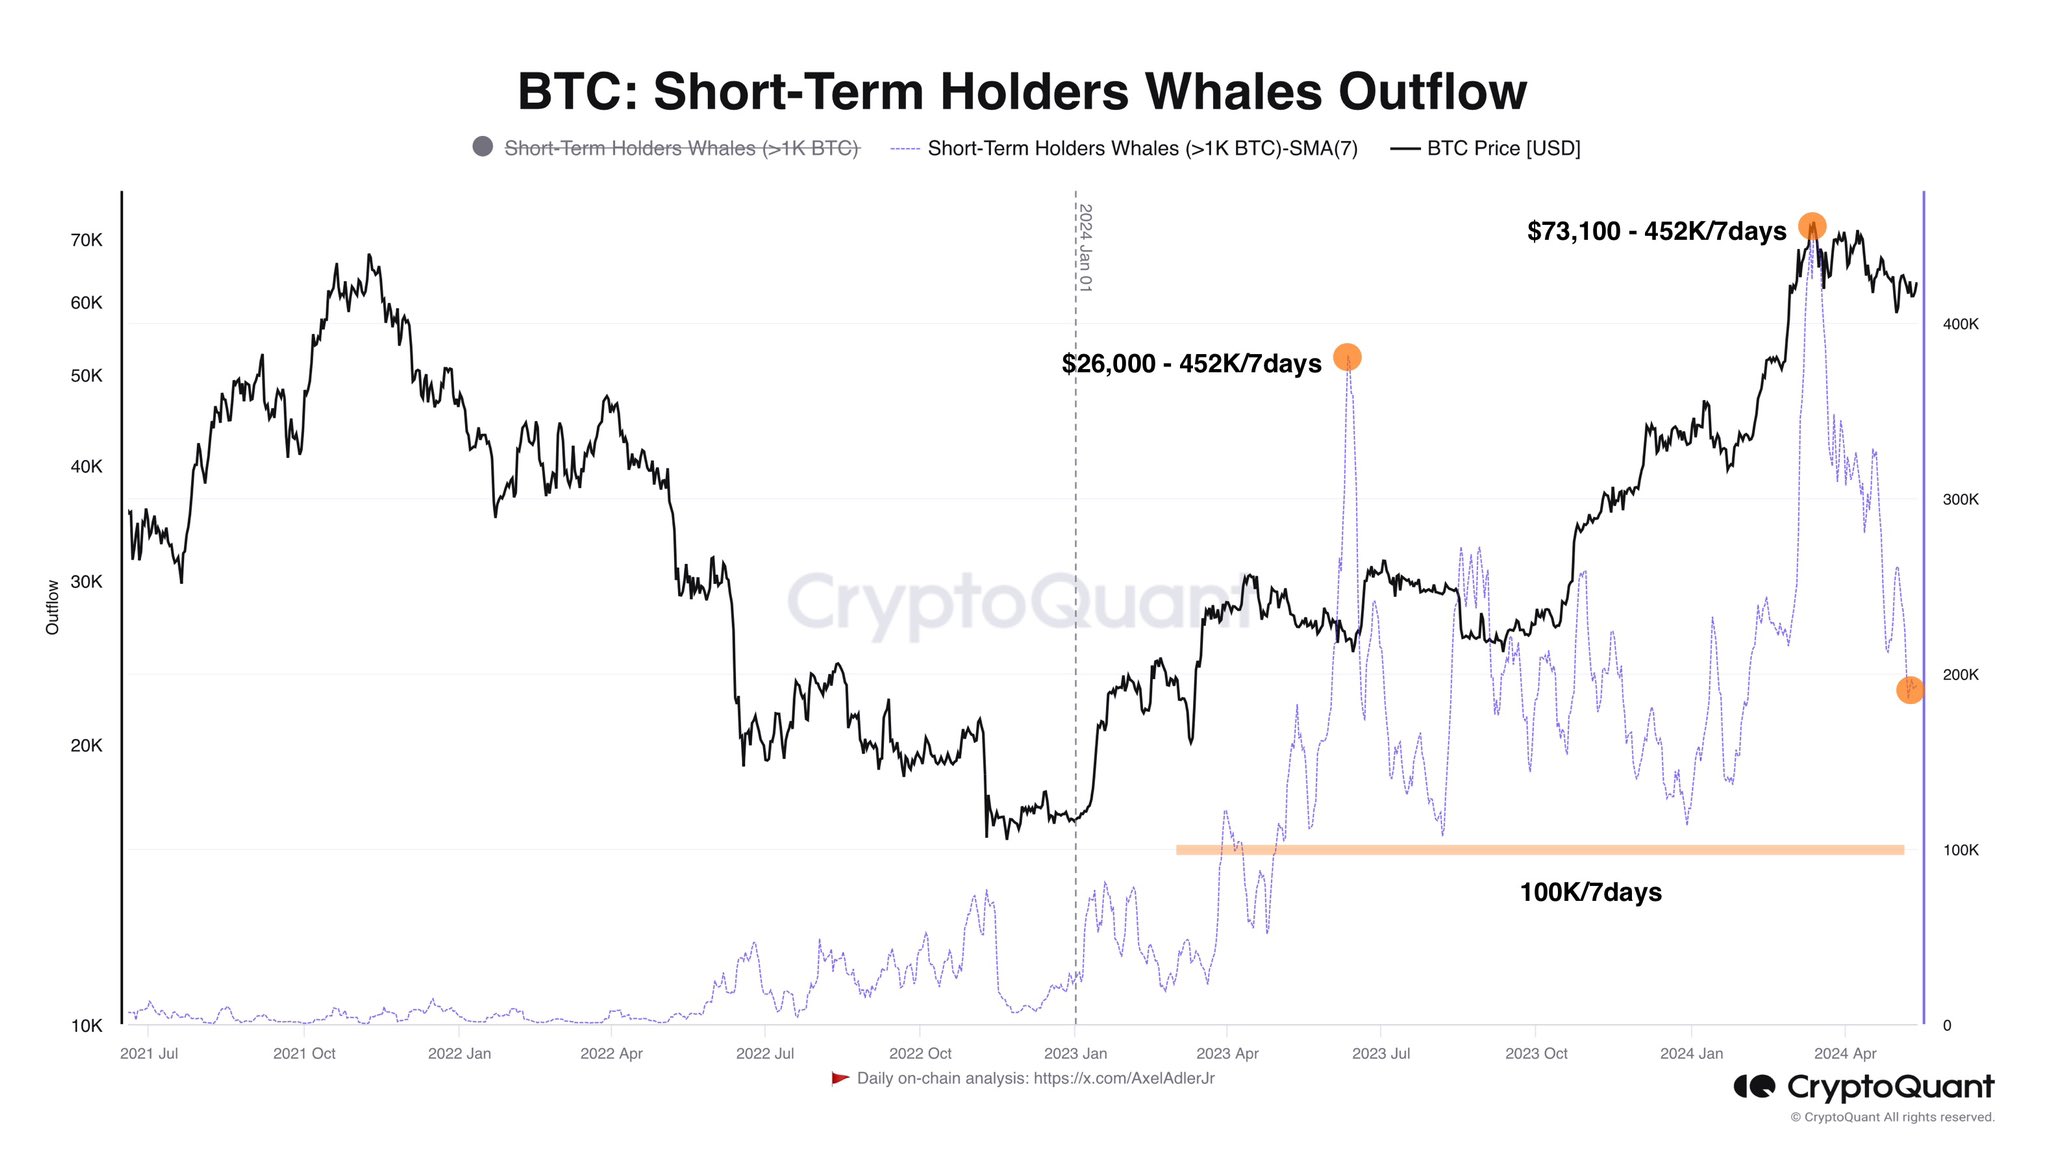  whales bitcoin short-term holder demand 200 btc 